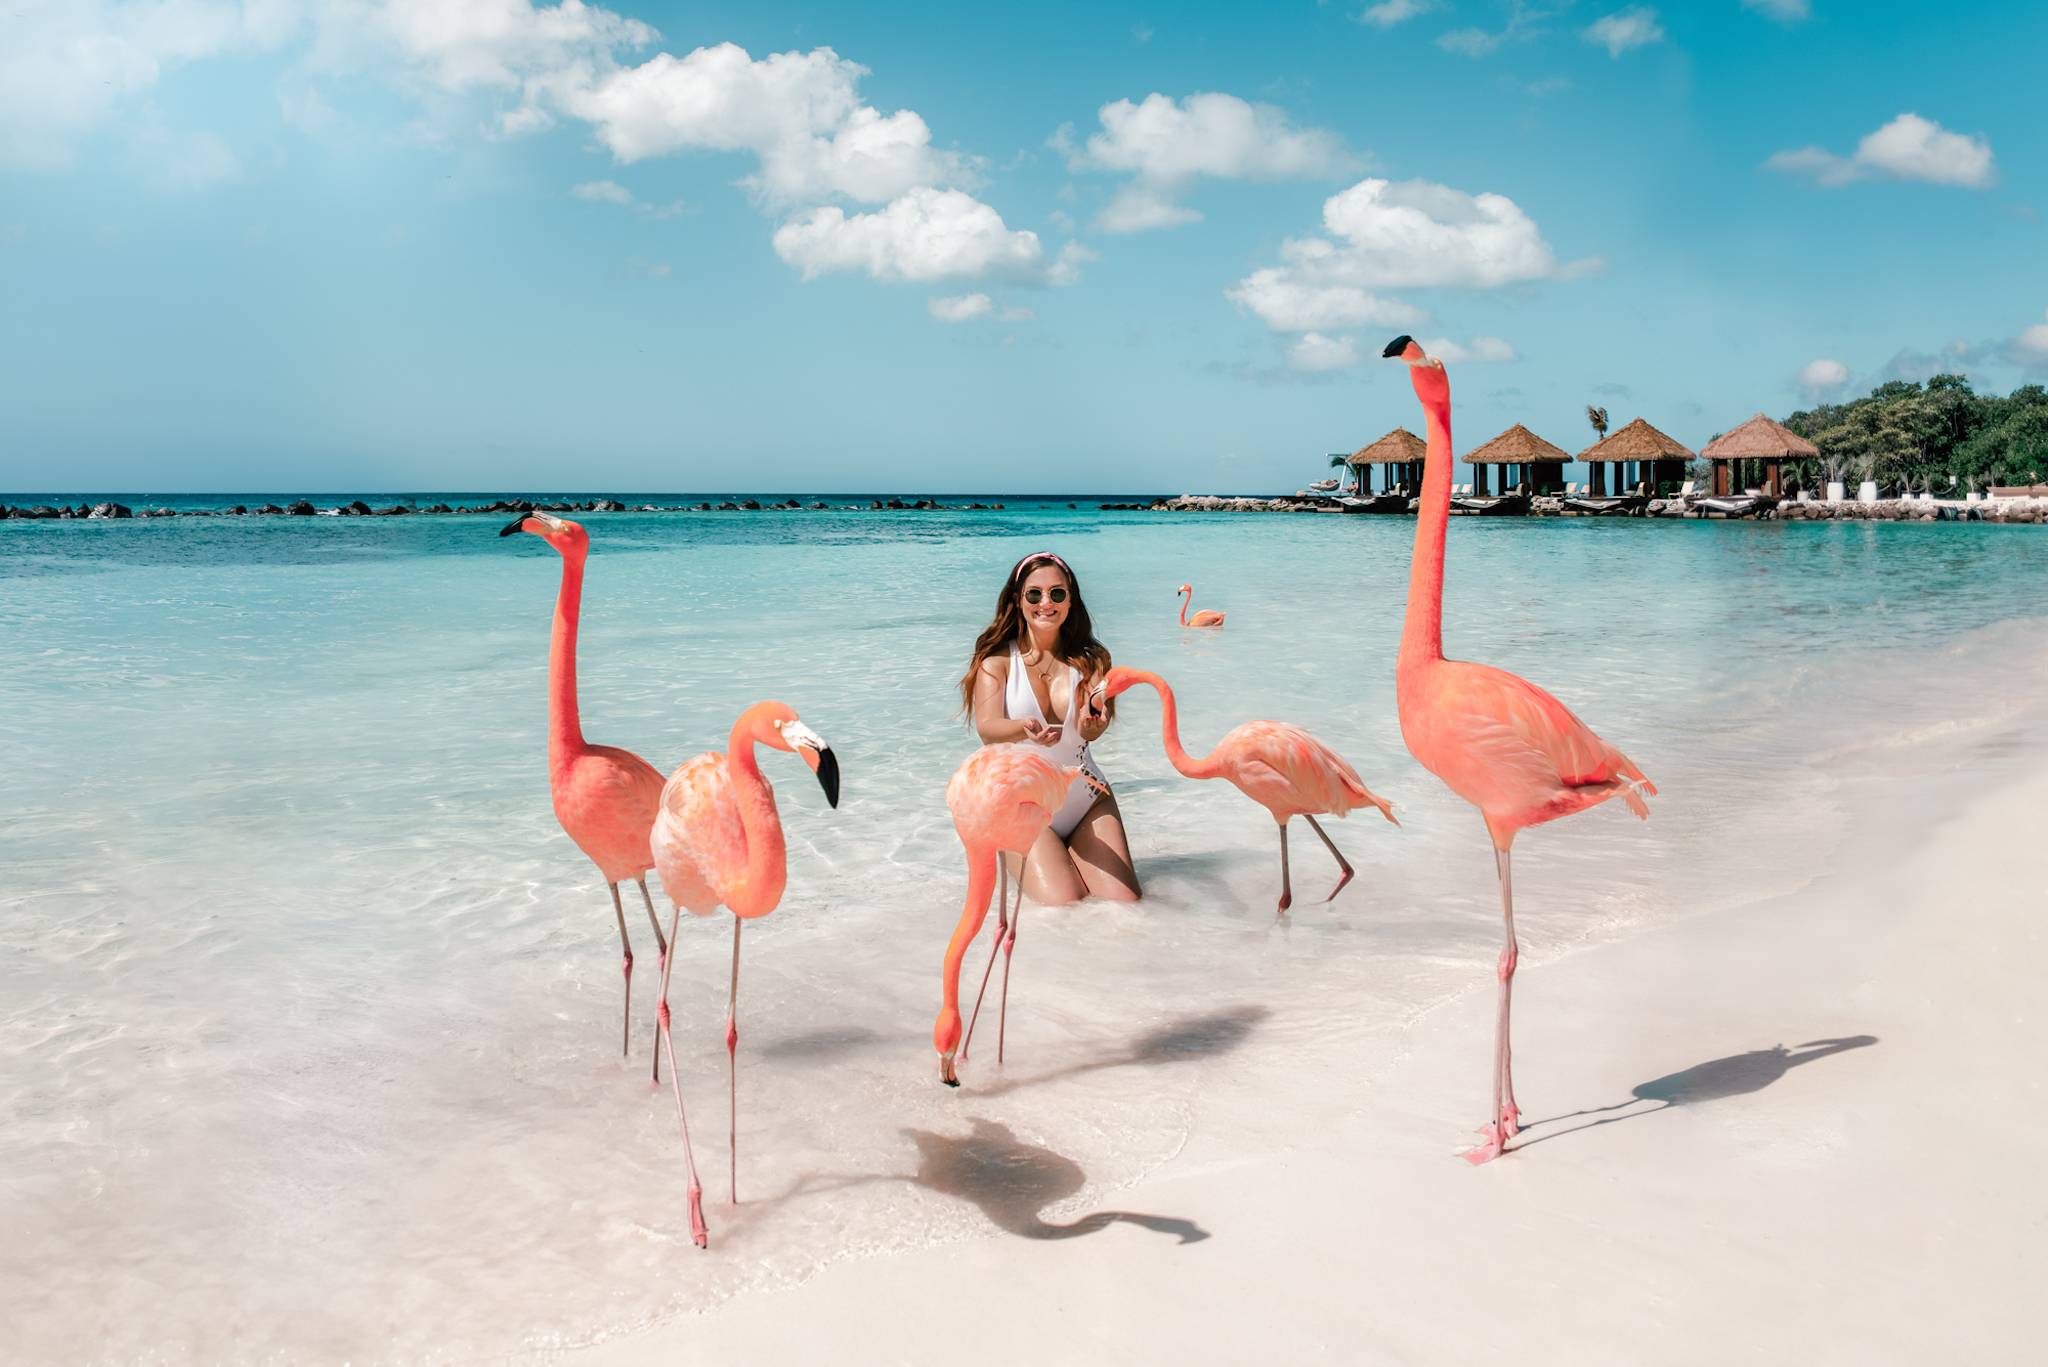 Đảo hồng hạc thu hút khách du lịch